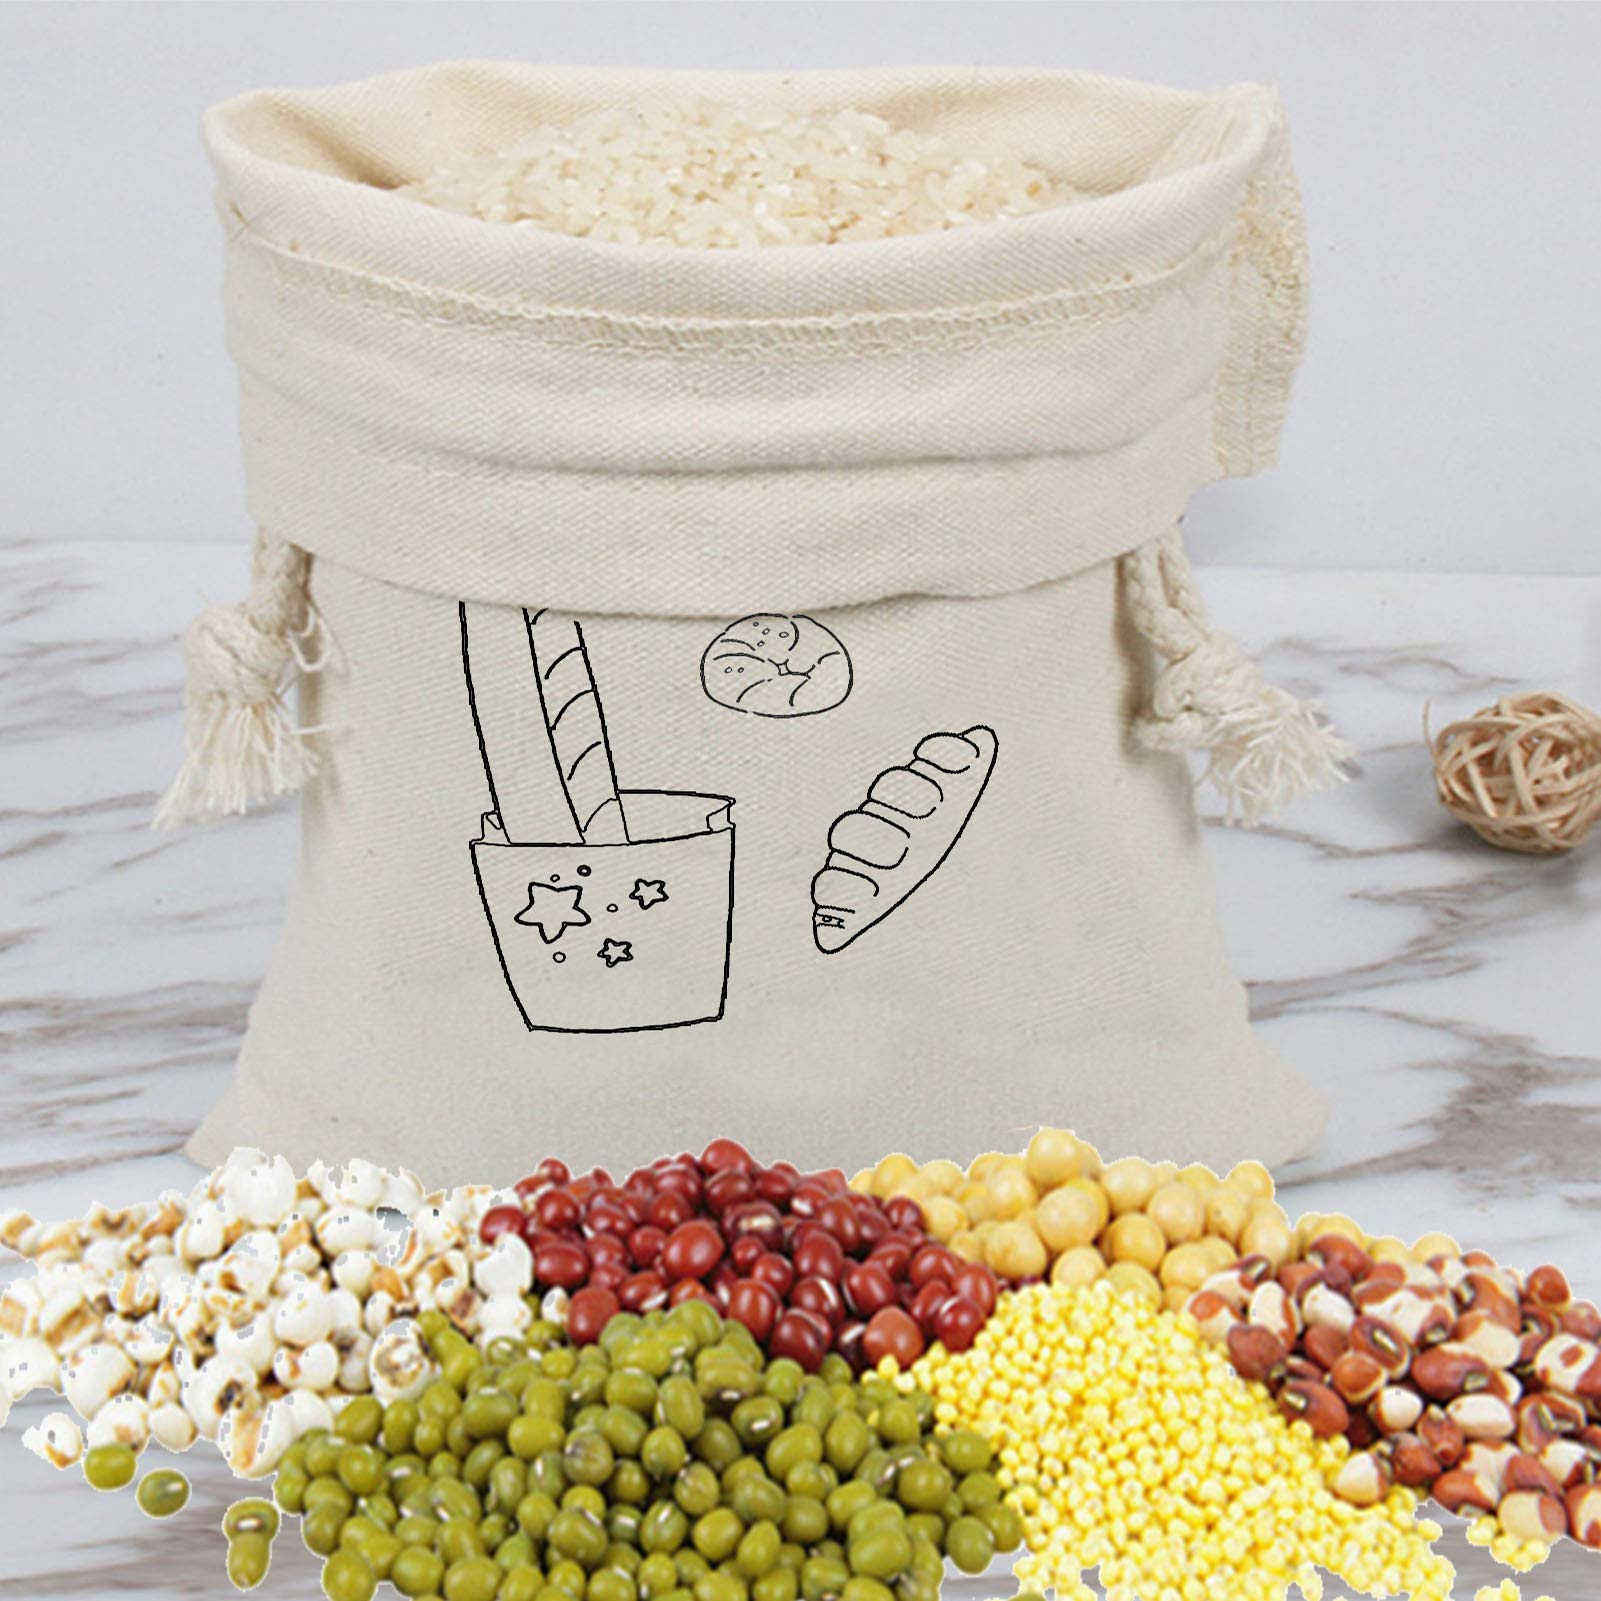 Brotbeutel Hausgemachte wiederverwendbare Aufbewahrungsbehälter für Lebensmittel Handwerkliche Brotbeutel Reiskorn Naturstoffbeutel